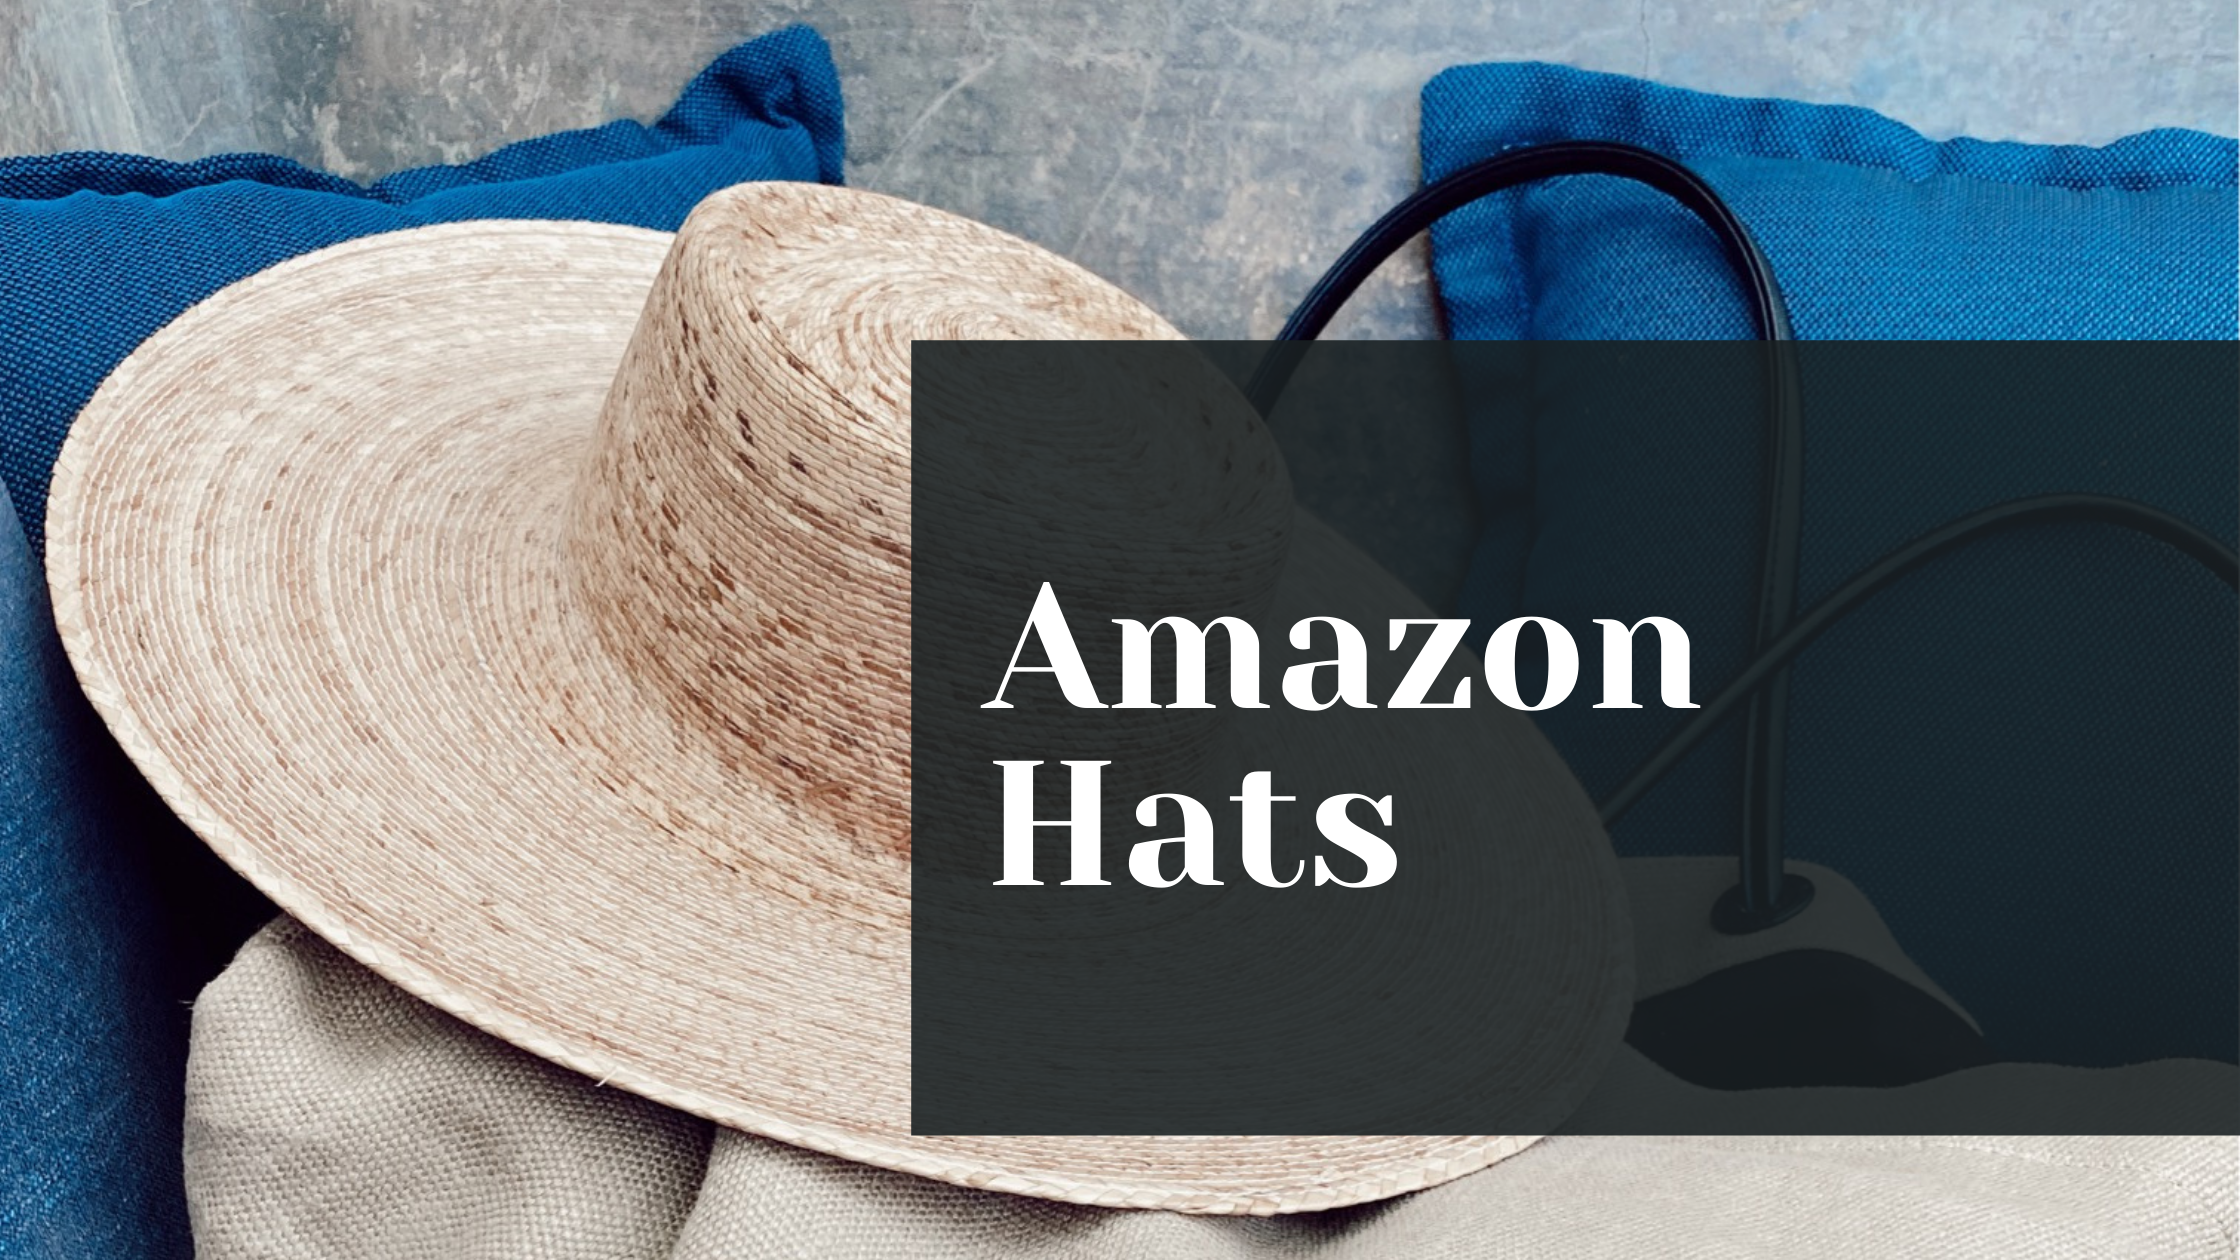 Amazon Hats